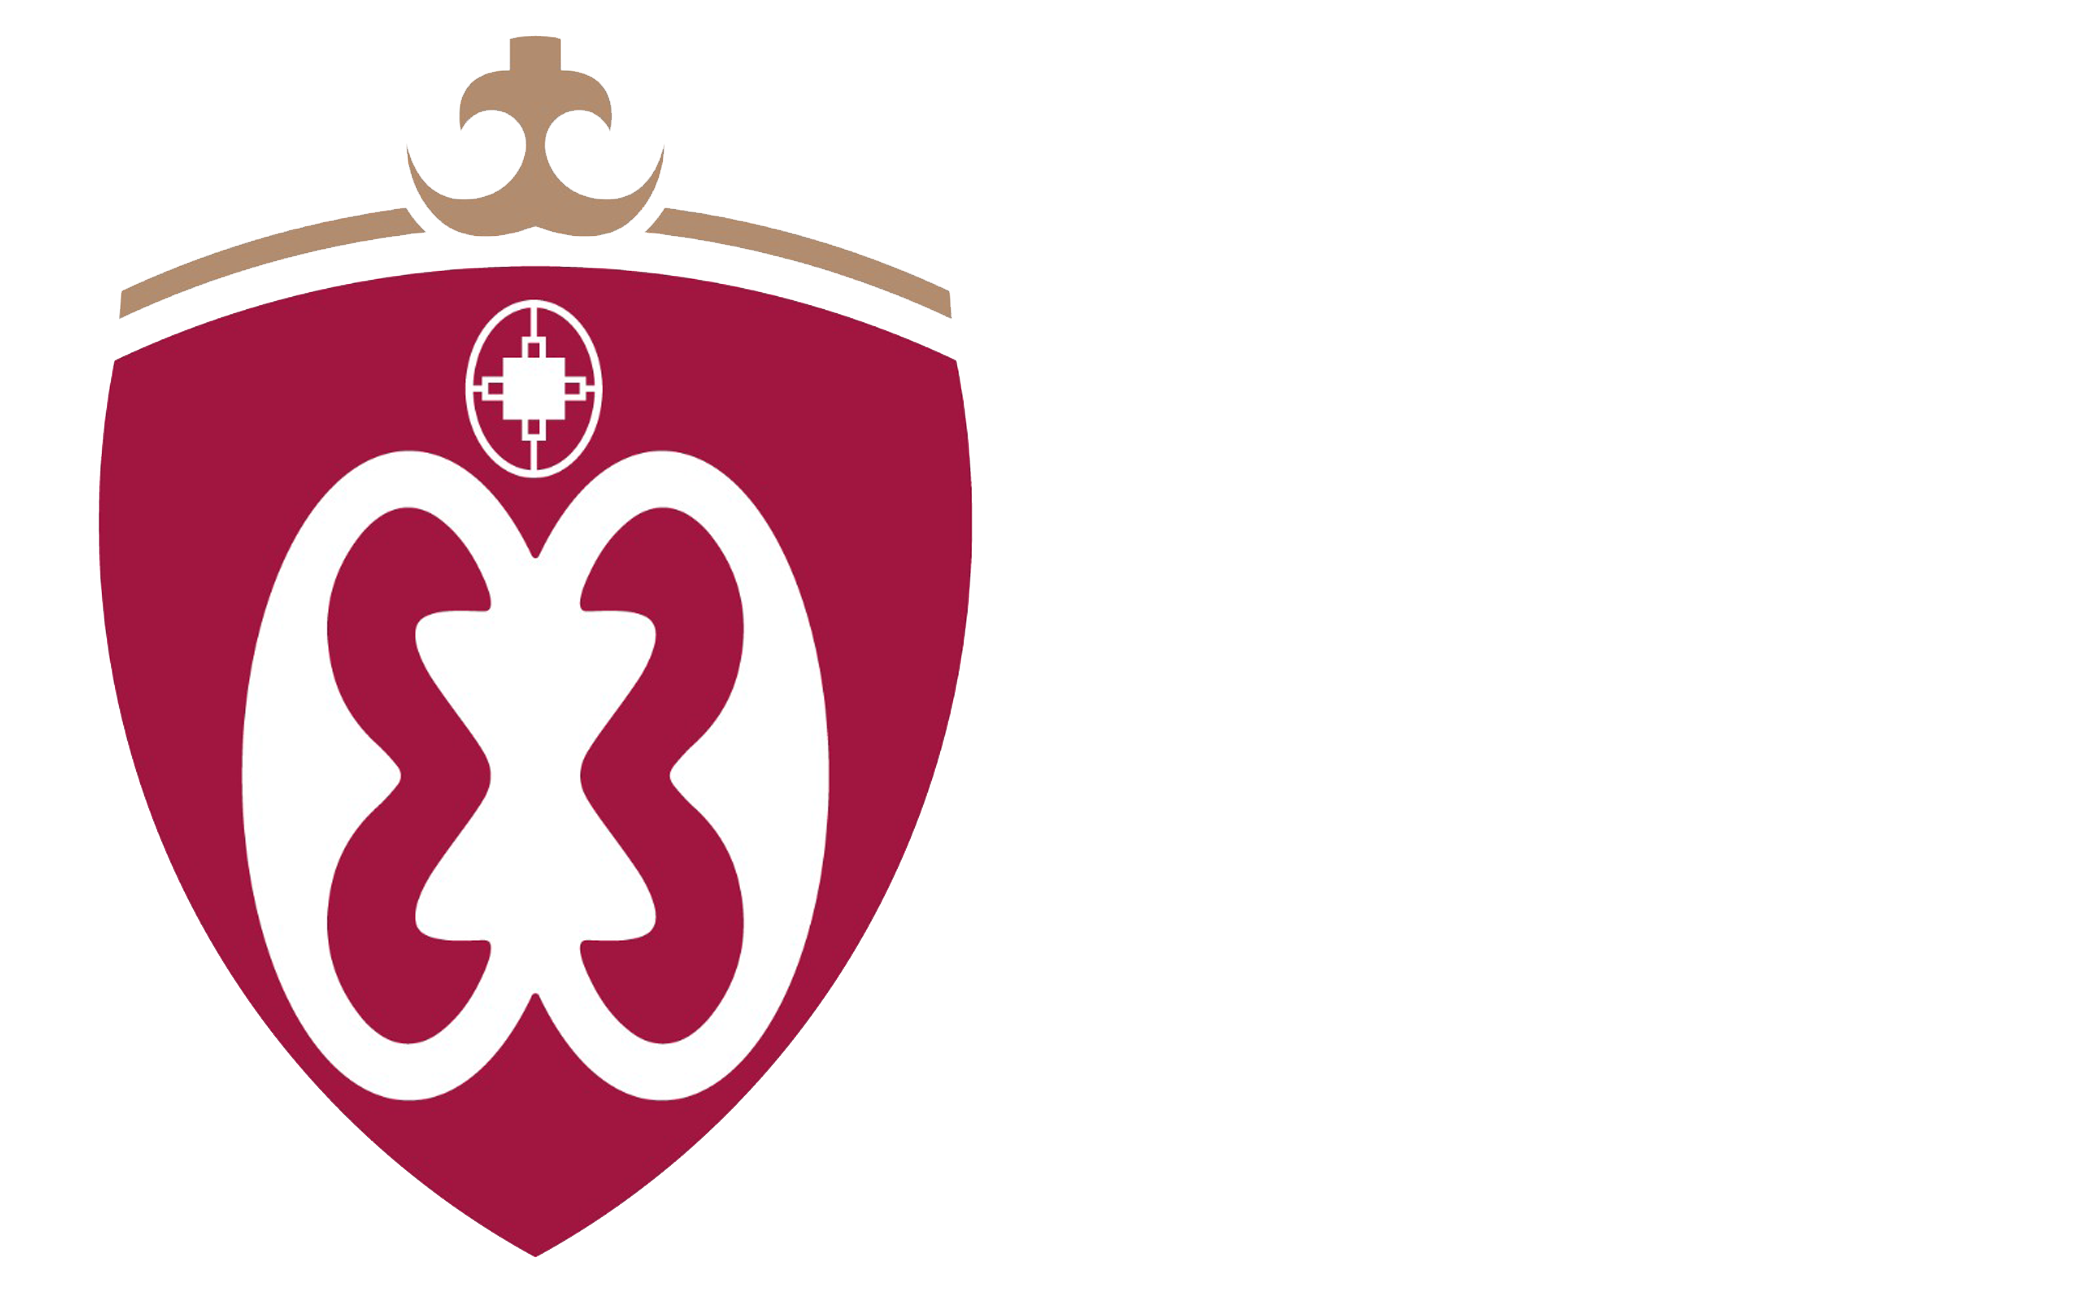 UniMAC - Institute of Film and Television